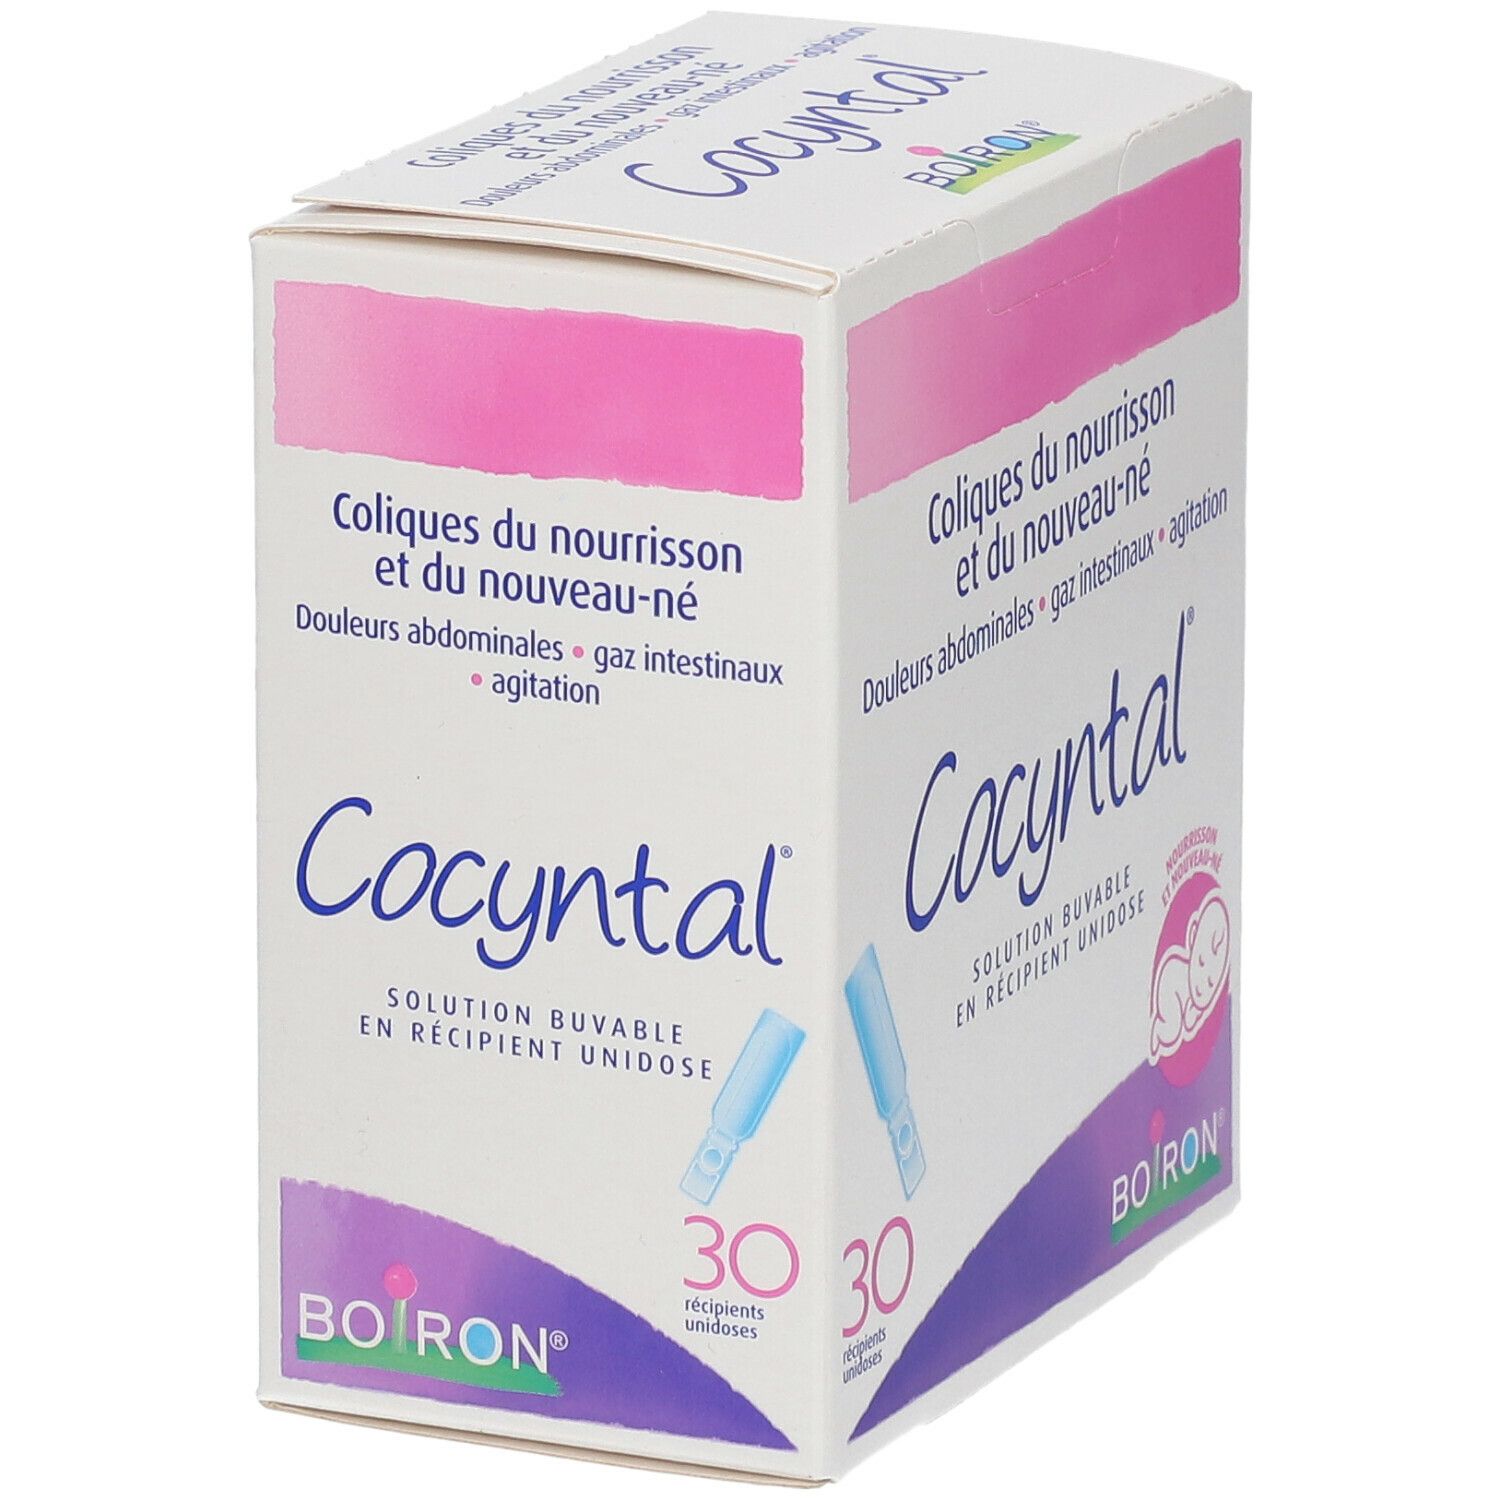 Cocyntal Colique du Nourrisson Boiron - 30 Unidoses